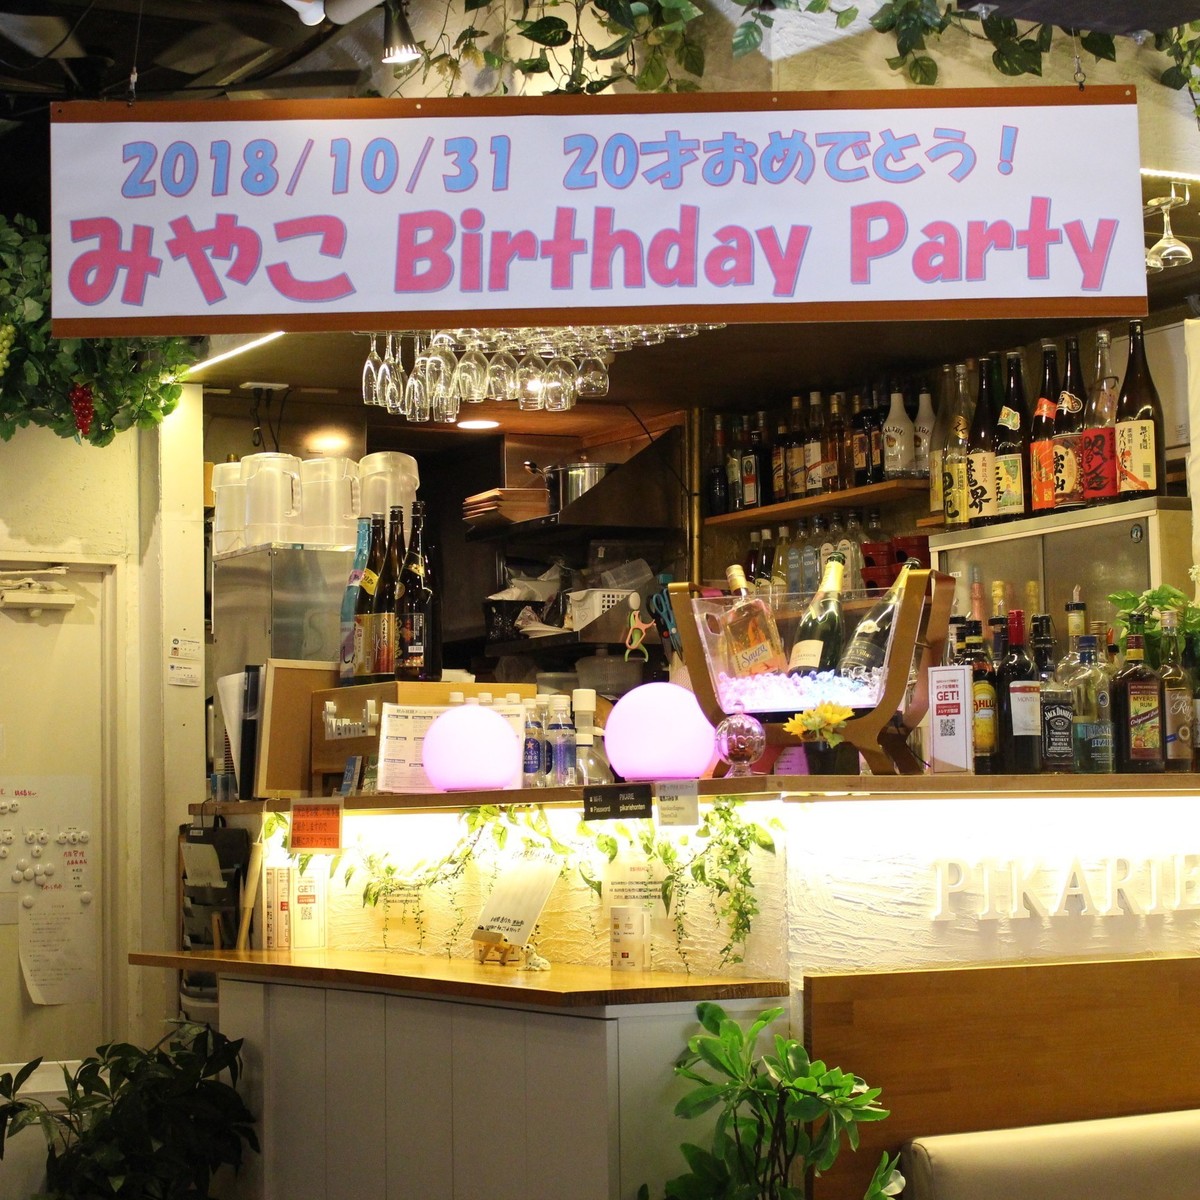 如果想在涩谷举办私人派对，我们推荐涩谷Picarie总店！私人派对免费横幅制作服务！